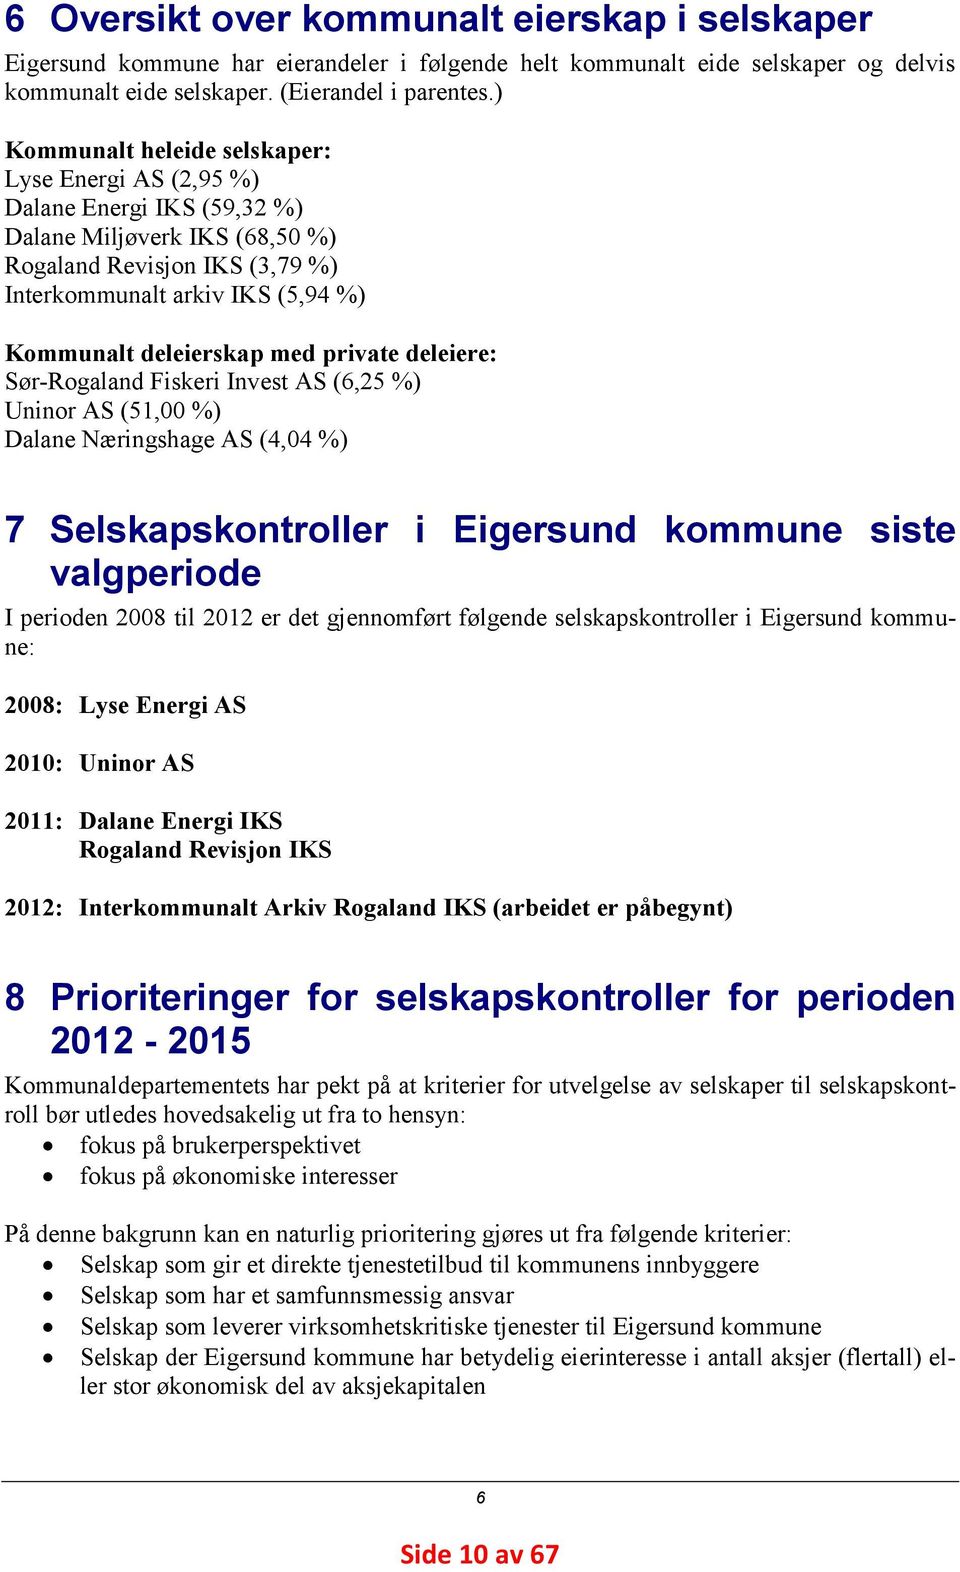 deleierskap med private deleiere: Sør-Rogaland Fiskeri Invest AS (6,25 %) Uninor AS (51,00 %) Dalane Næringshage AS (4,04 %) 7 Selskapskontroller i Eigersund kommune siste valgperiode I perioden 2008